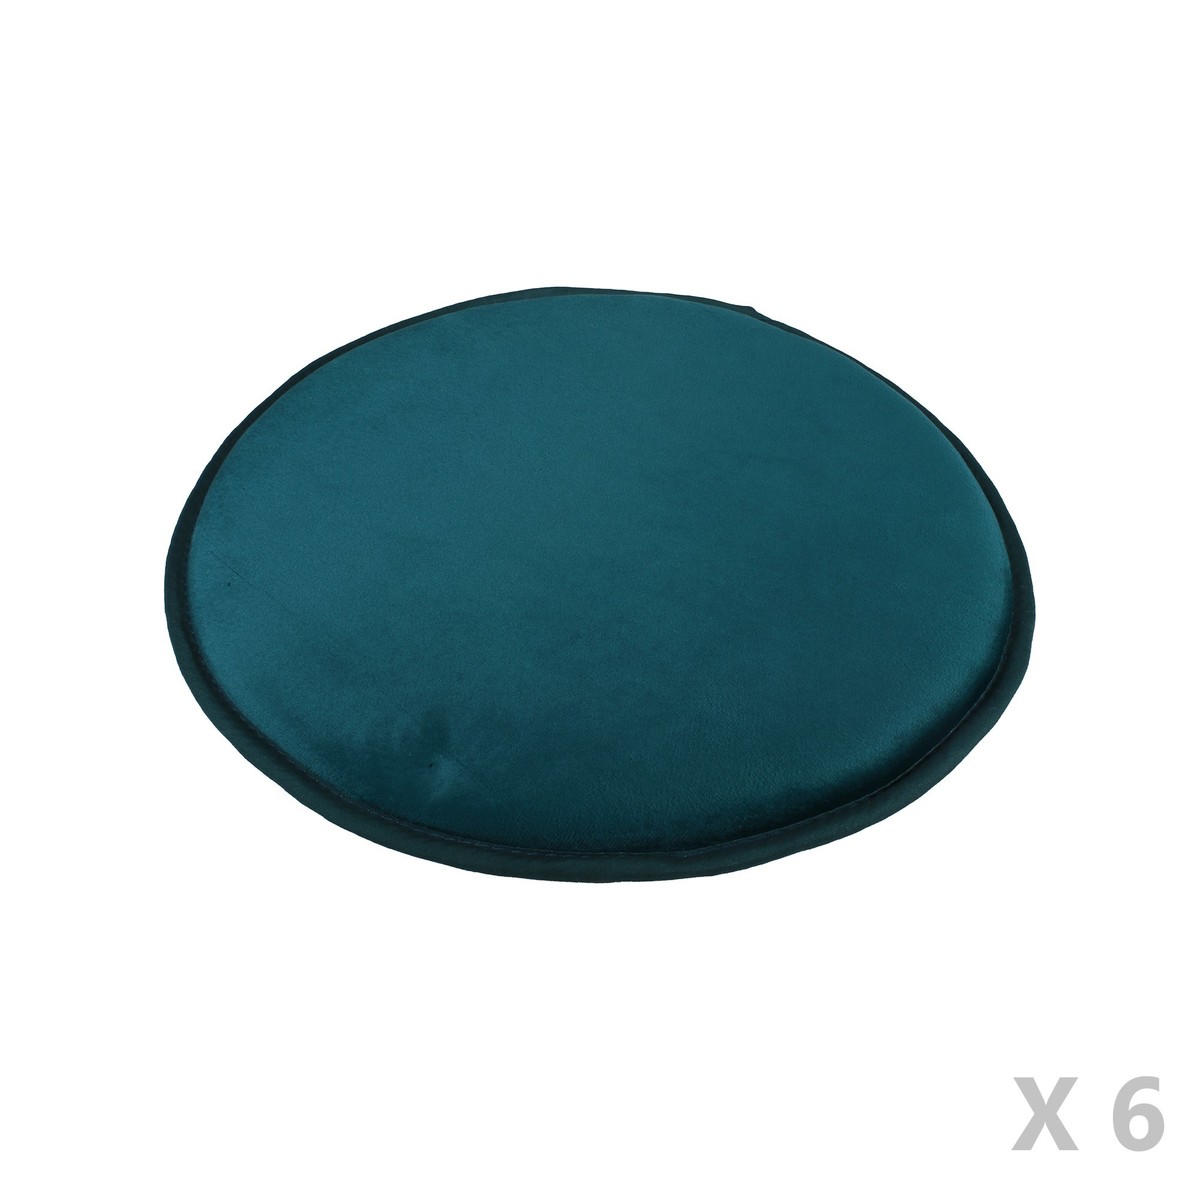 Casa Almofada de cadeira Mesas de centro de exteriorctory ELTON X6 Azul / Pato